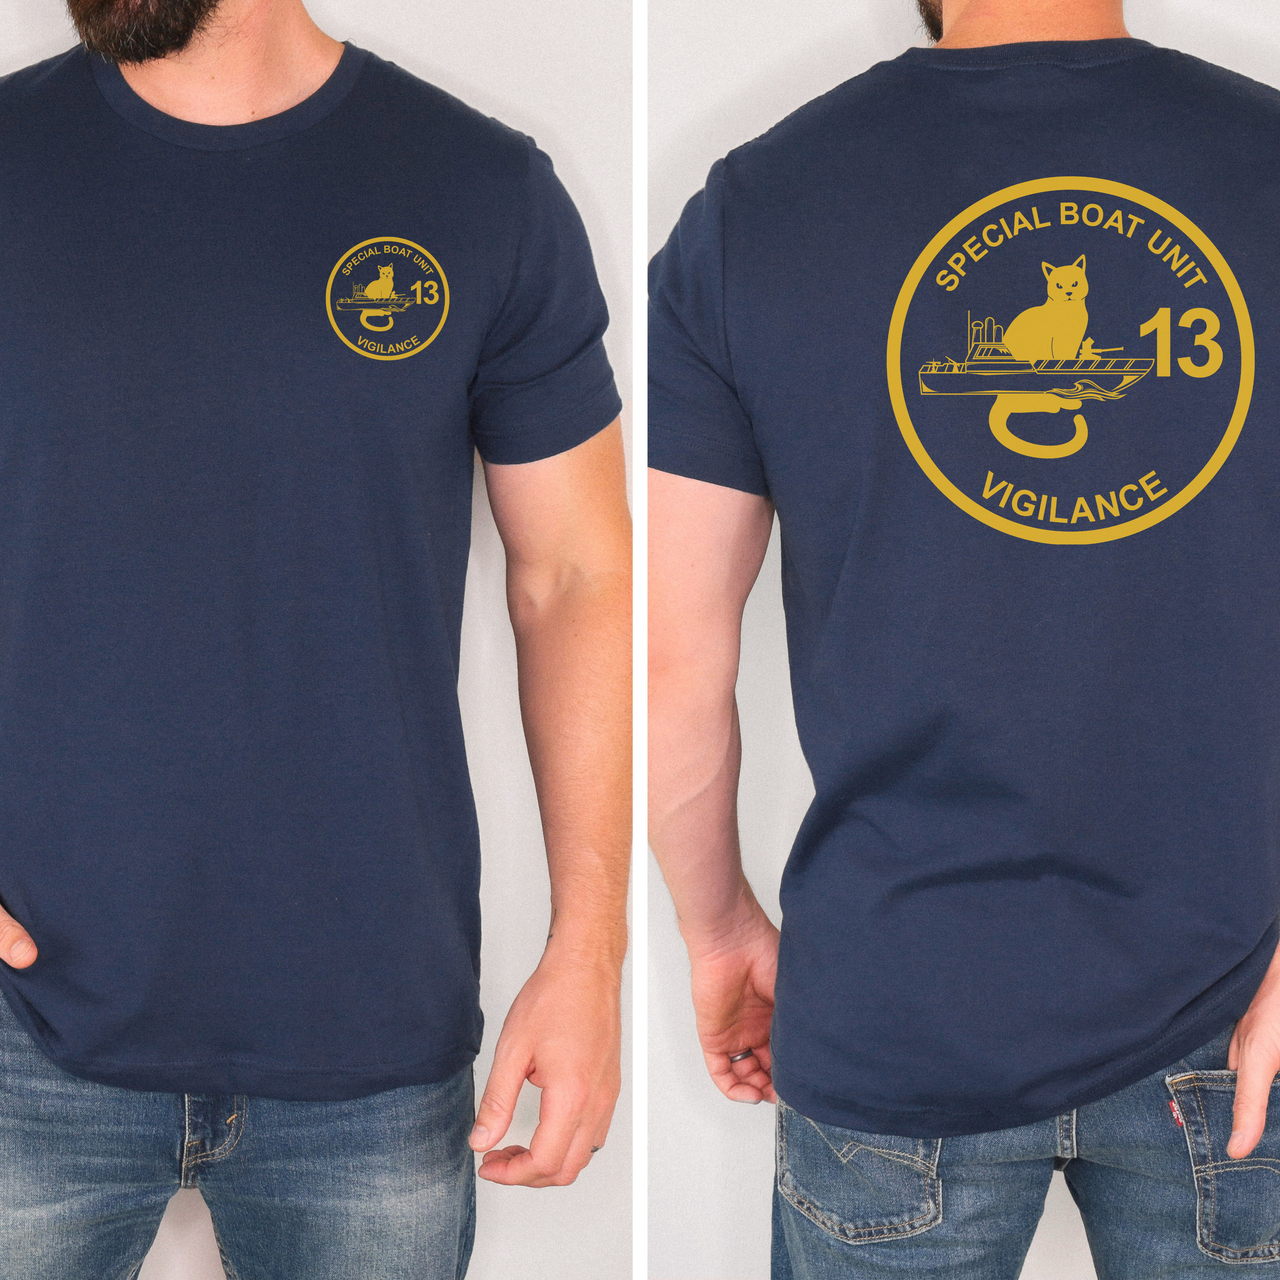 Special Boat Unit 13 - SBU13 T-Shirt (Gold)